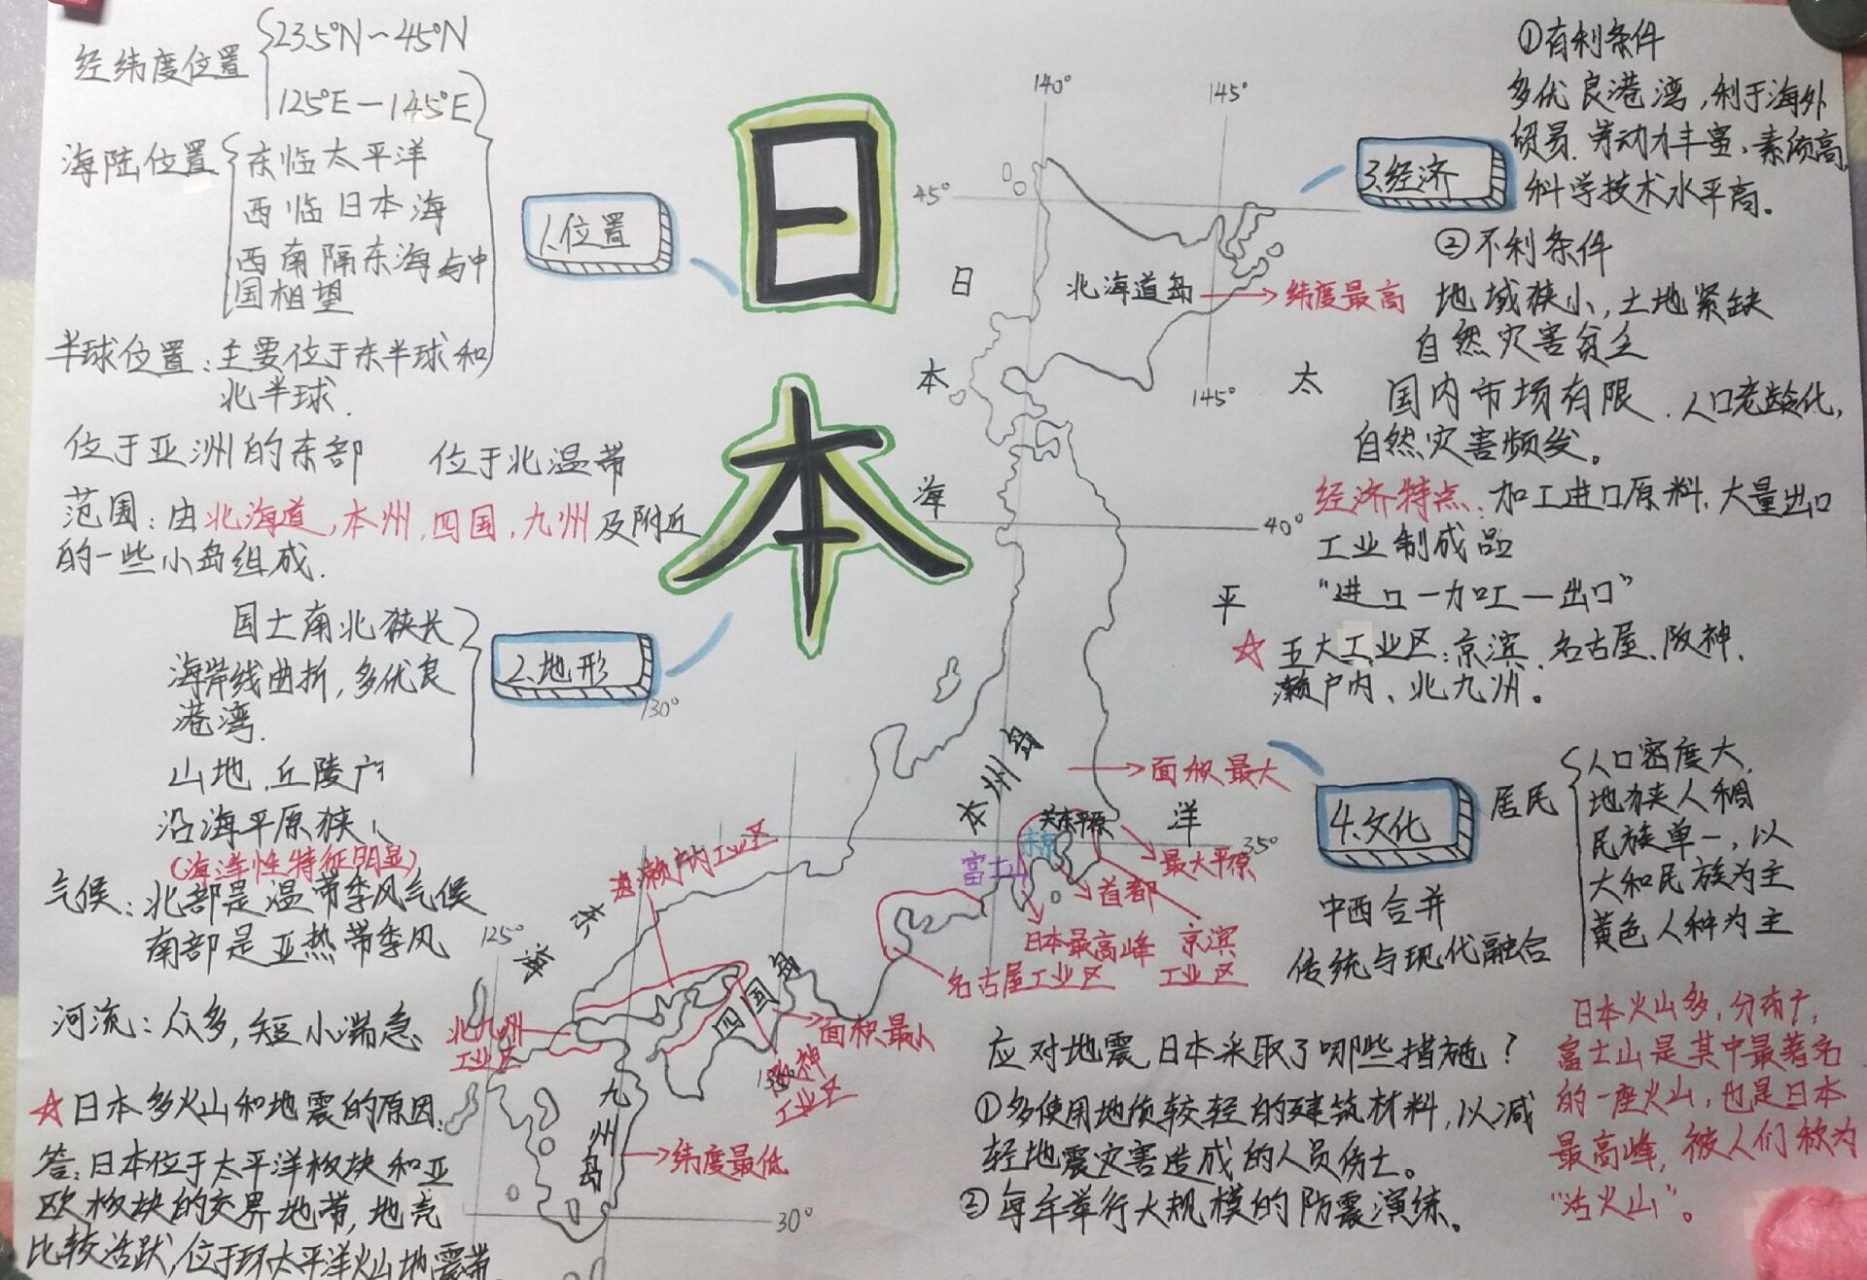 日本地理概况思维导图图片